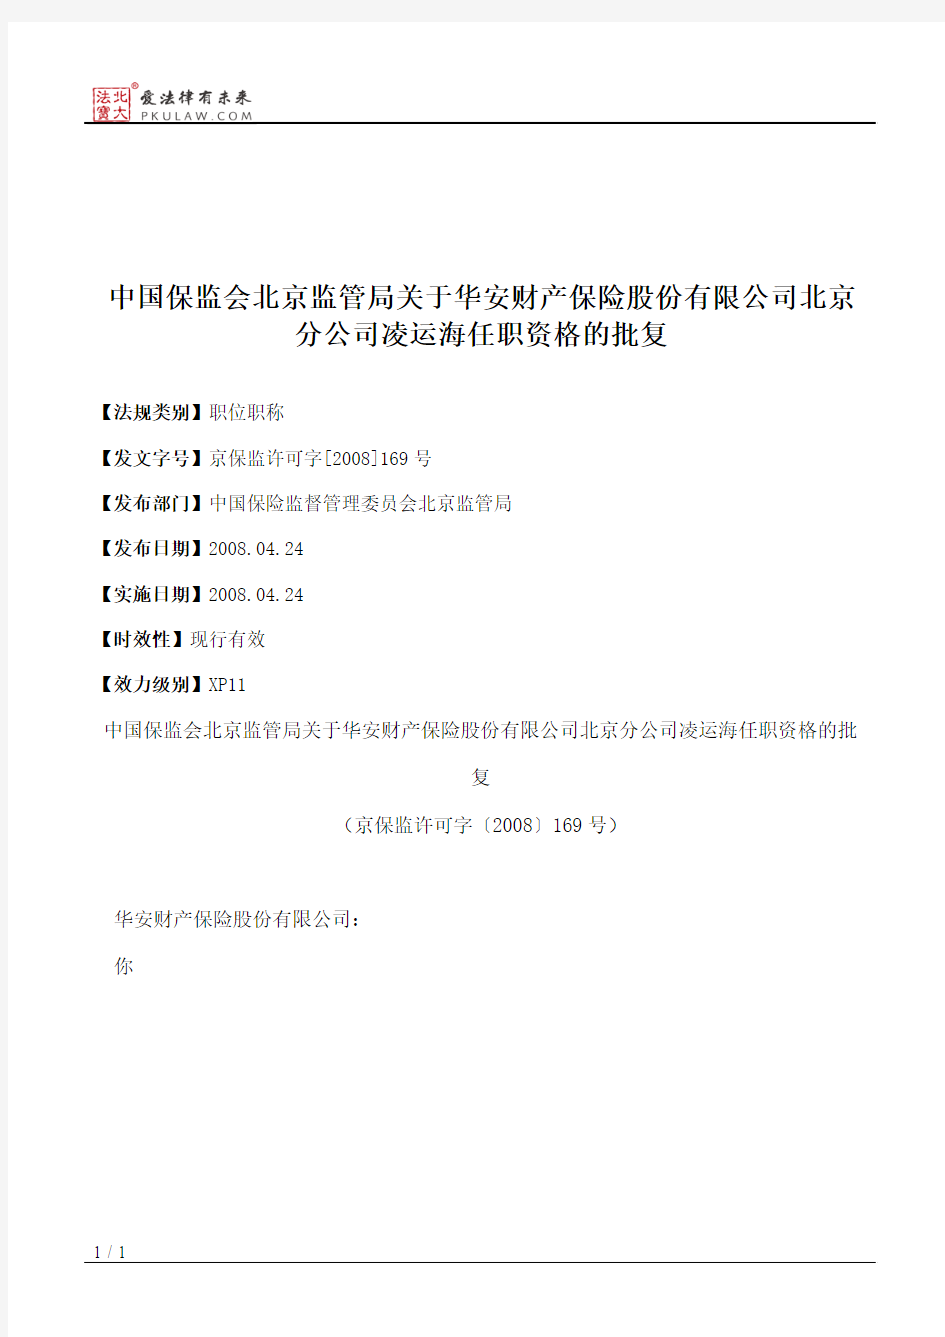 中国保监会北京监管局关于华安财产保险股份有限公司北京分公司凌